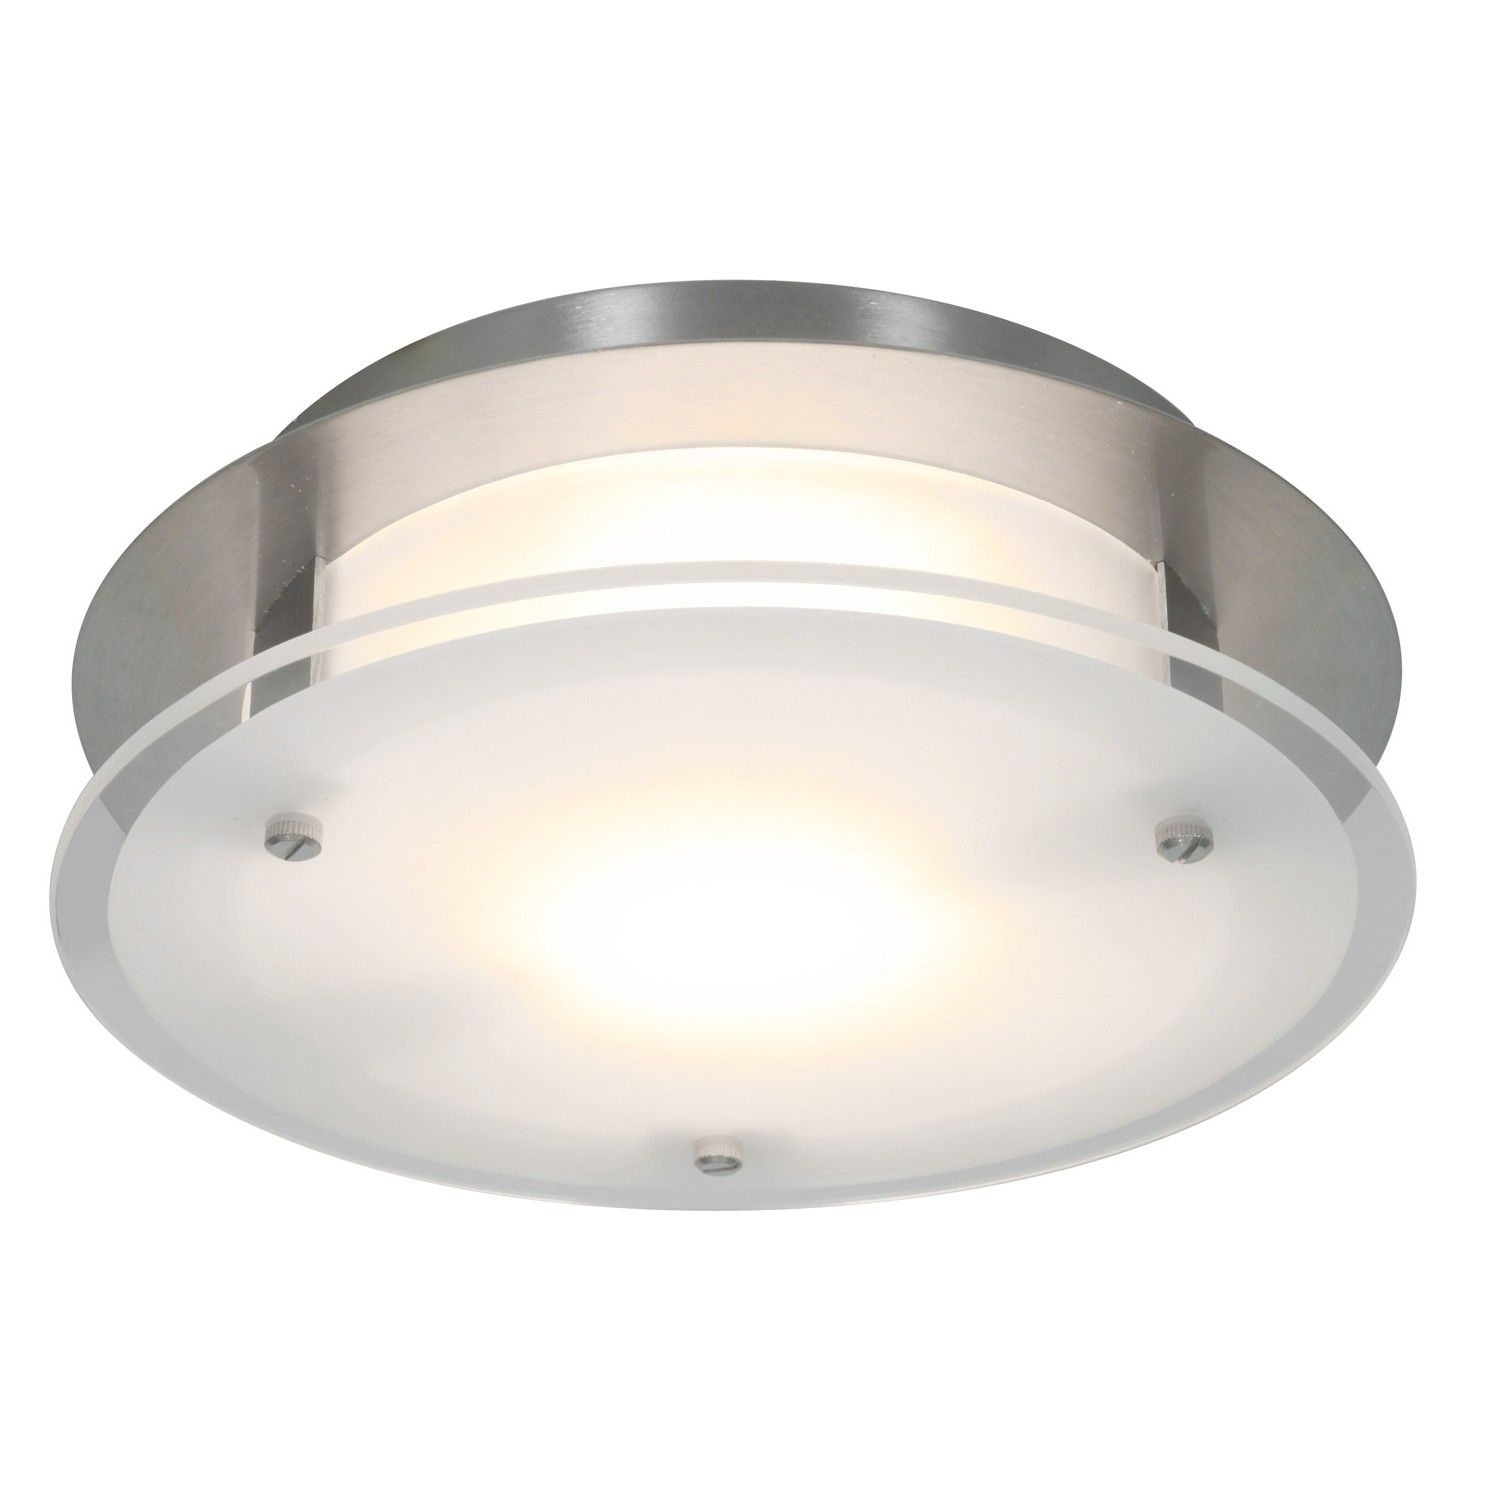 Luxury Ductless Bathroom Fan With Light Bathroom Fan Light regarding dimensions 1500 X 1500